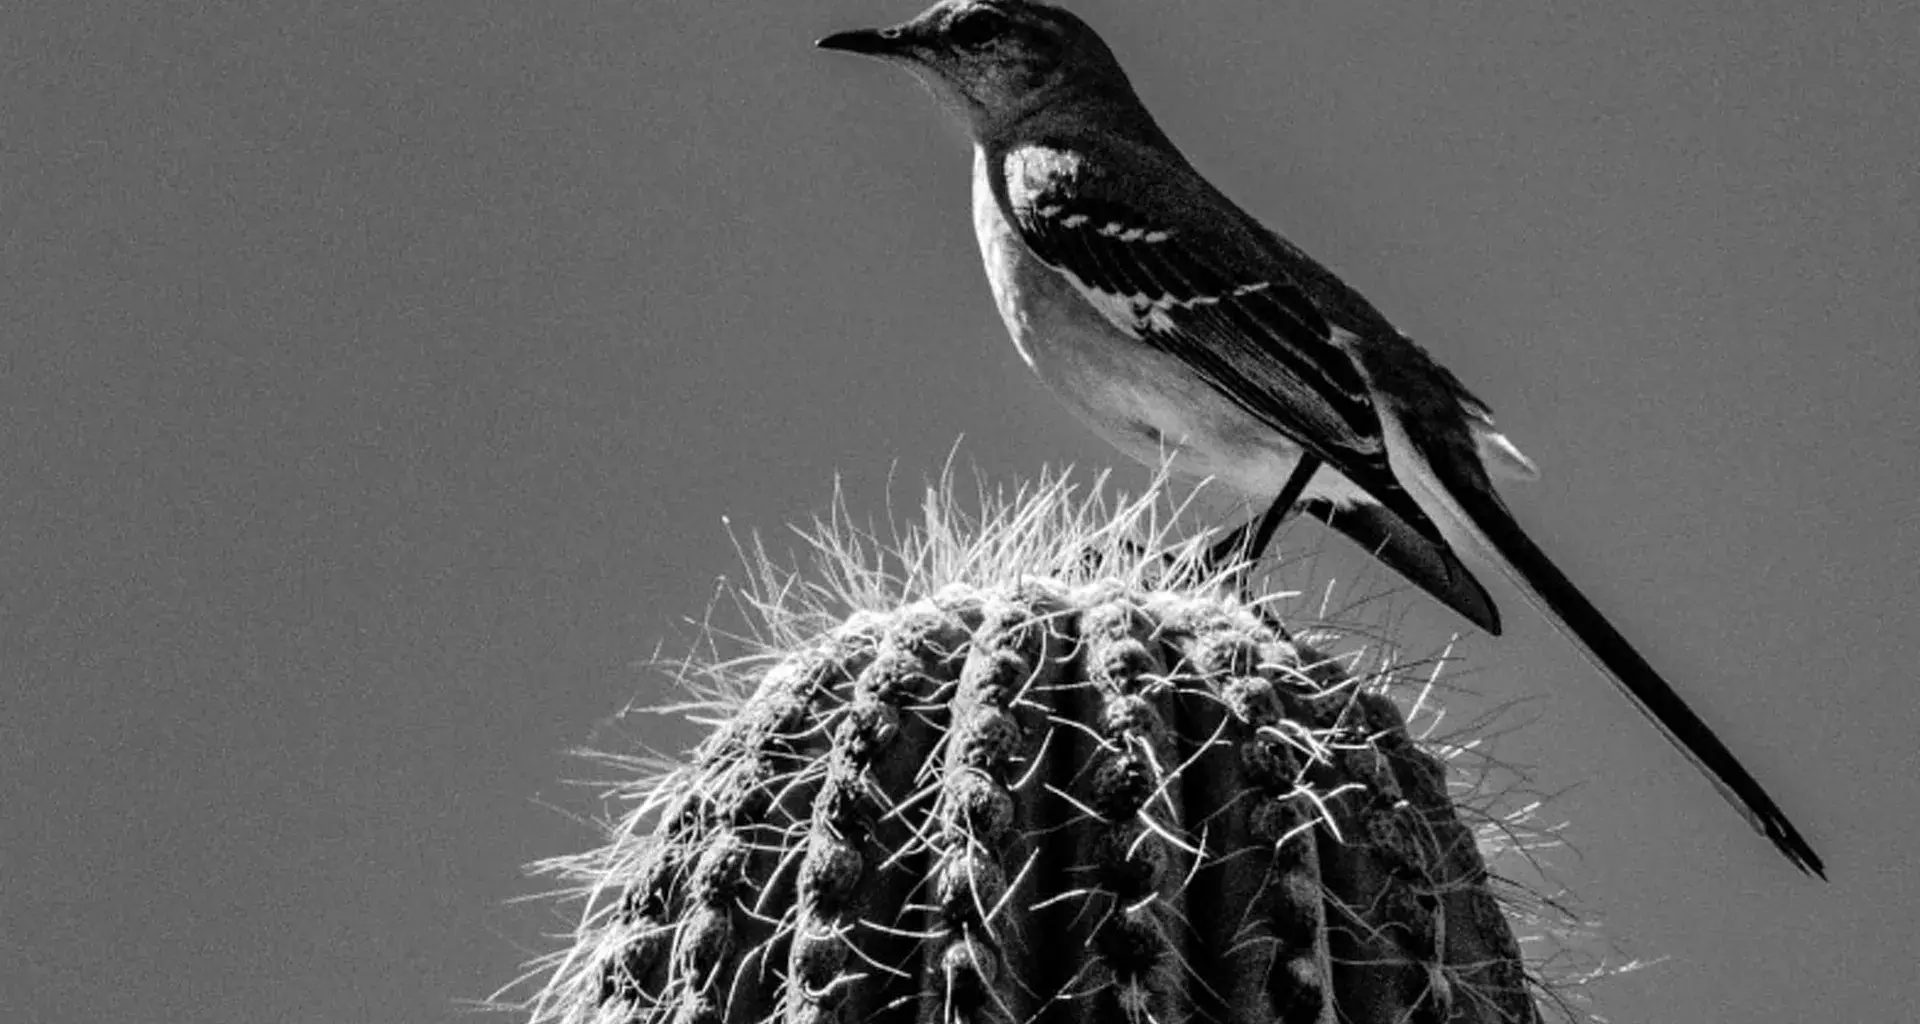 Fotografía de un pájaro sobre un cactus, capturada por el profesor investigador Mario Manzano.